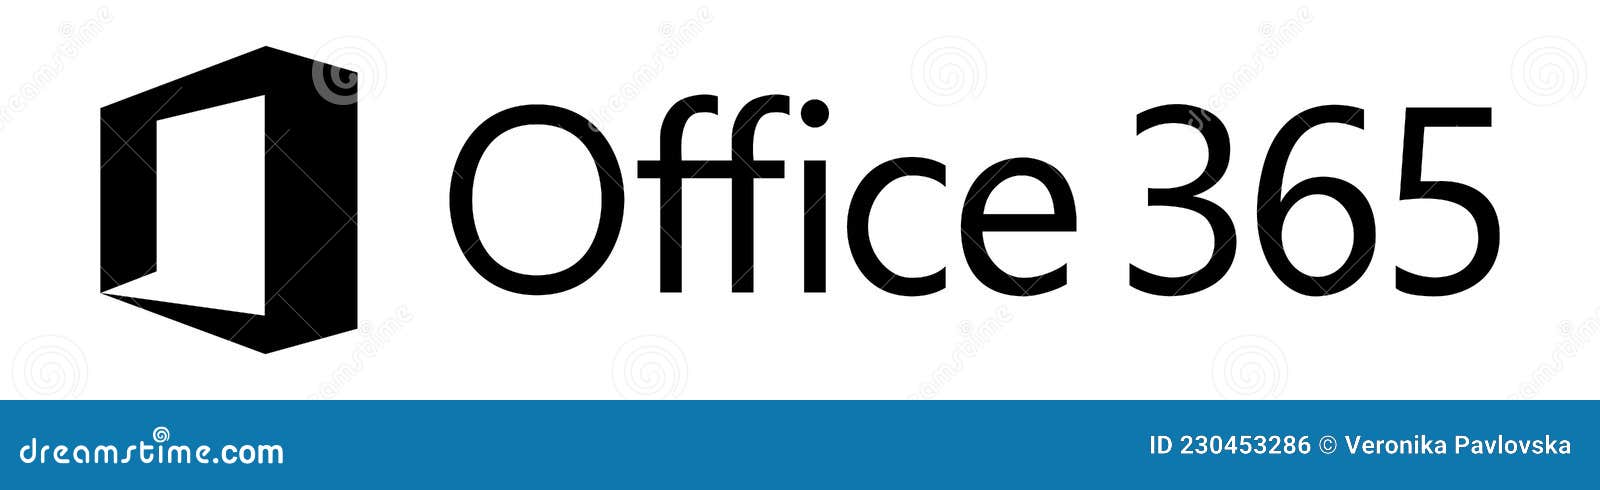 Office 365 Logo: Đại diện cho sự hoàn hảo và sự chuyên nghiệp, Office 365 Logo được thể hiện rõ ràng trong mọi doanh nghiệp. Logo này là biểu tượng hình ảnh của sự hiệu quả và sự chuẩn mực.